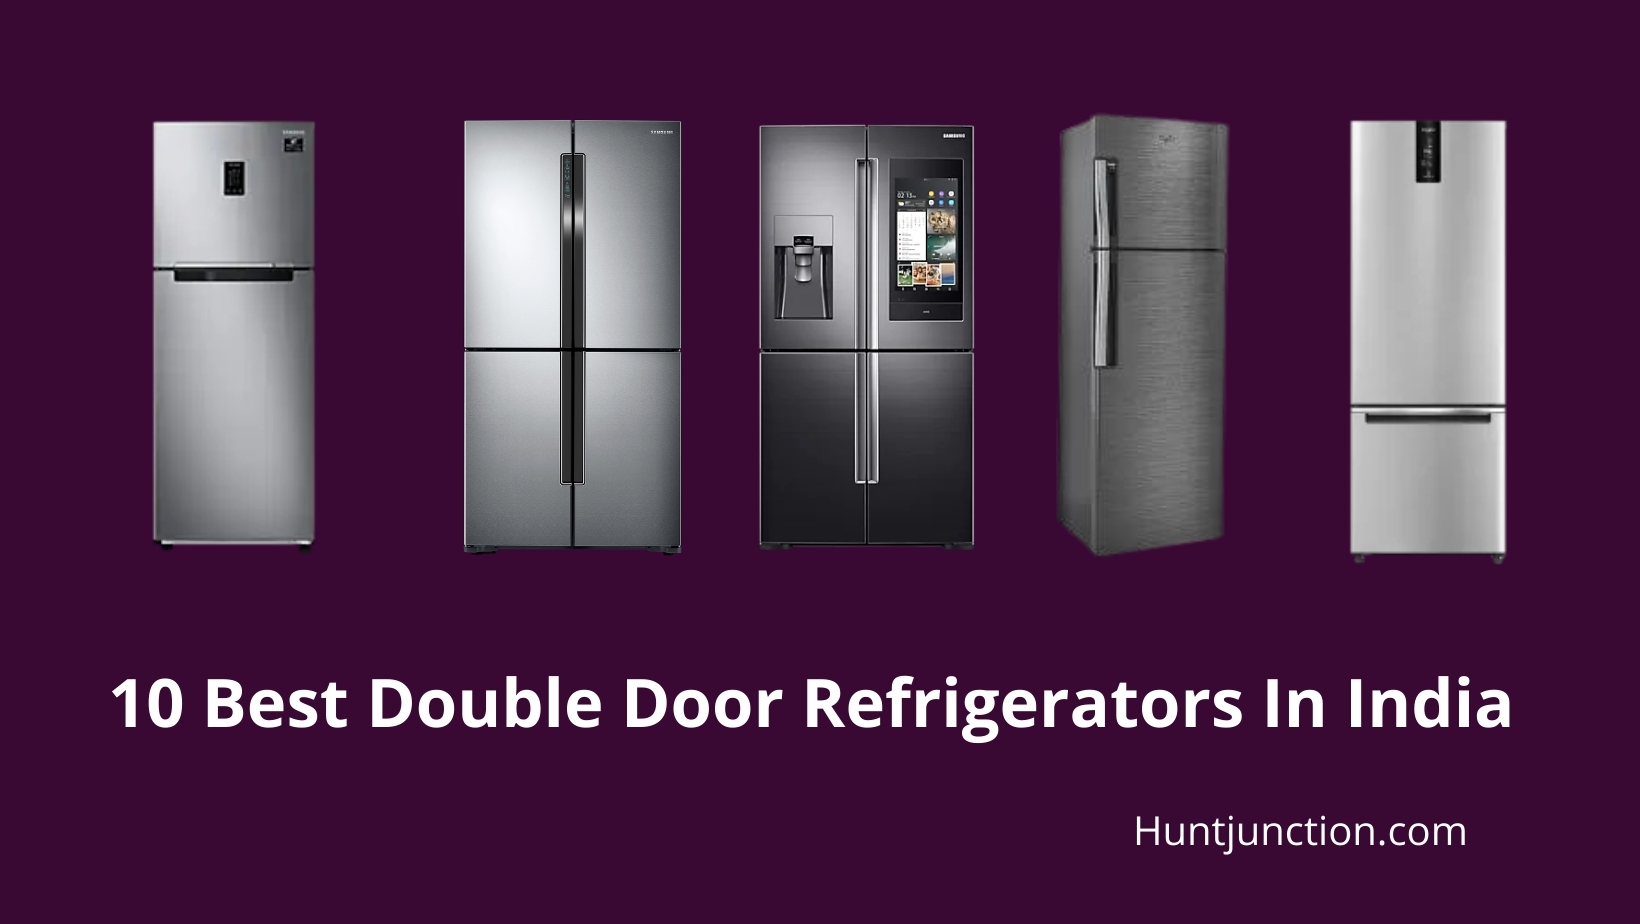 10 Best Double Door Refrigerators In India (September 2021)